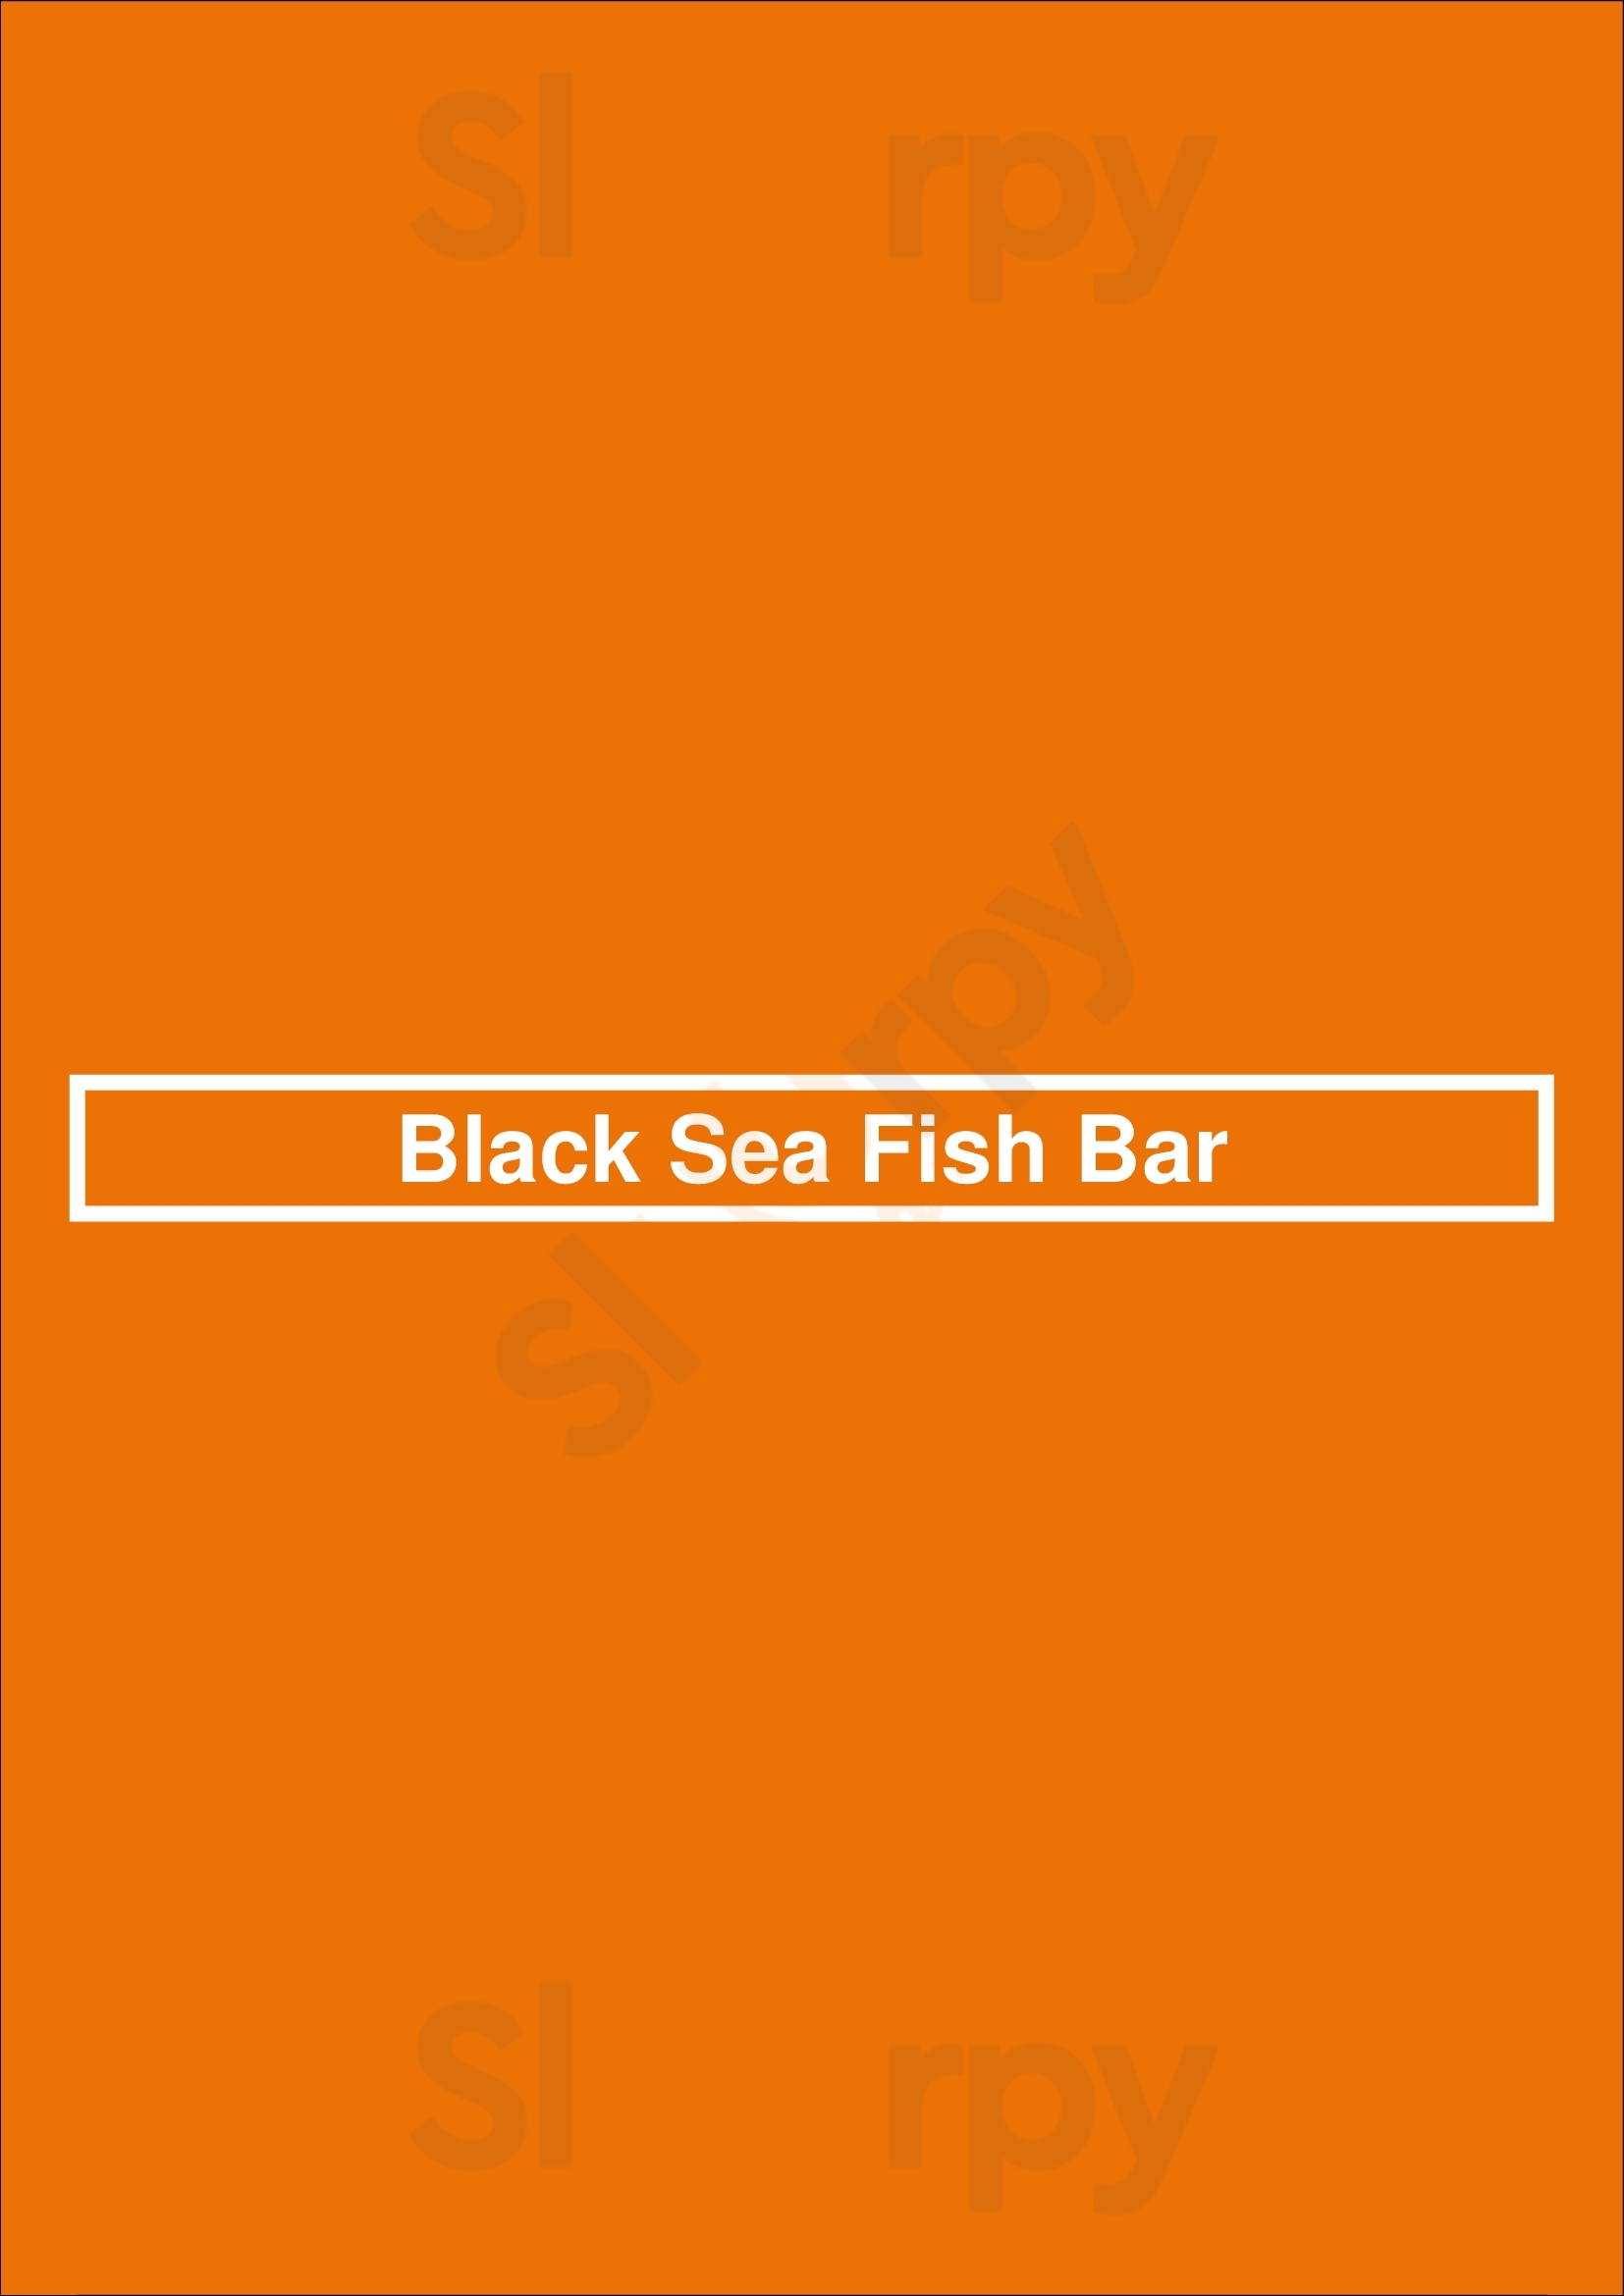 Black Sea Fish Bar Maidstone Menu - 1